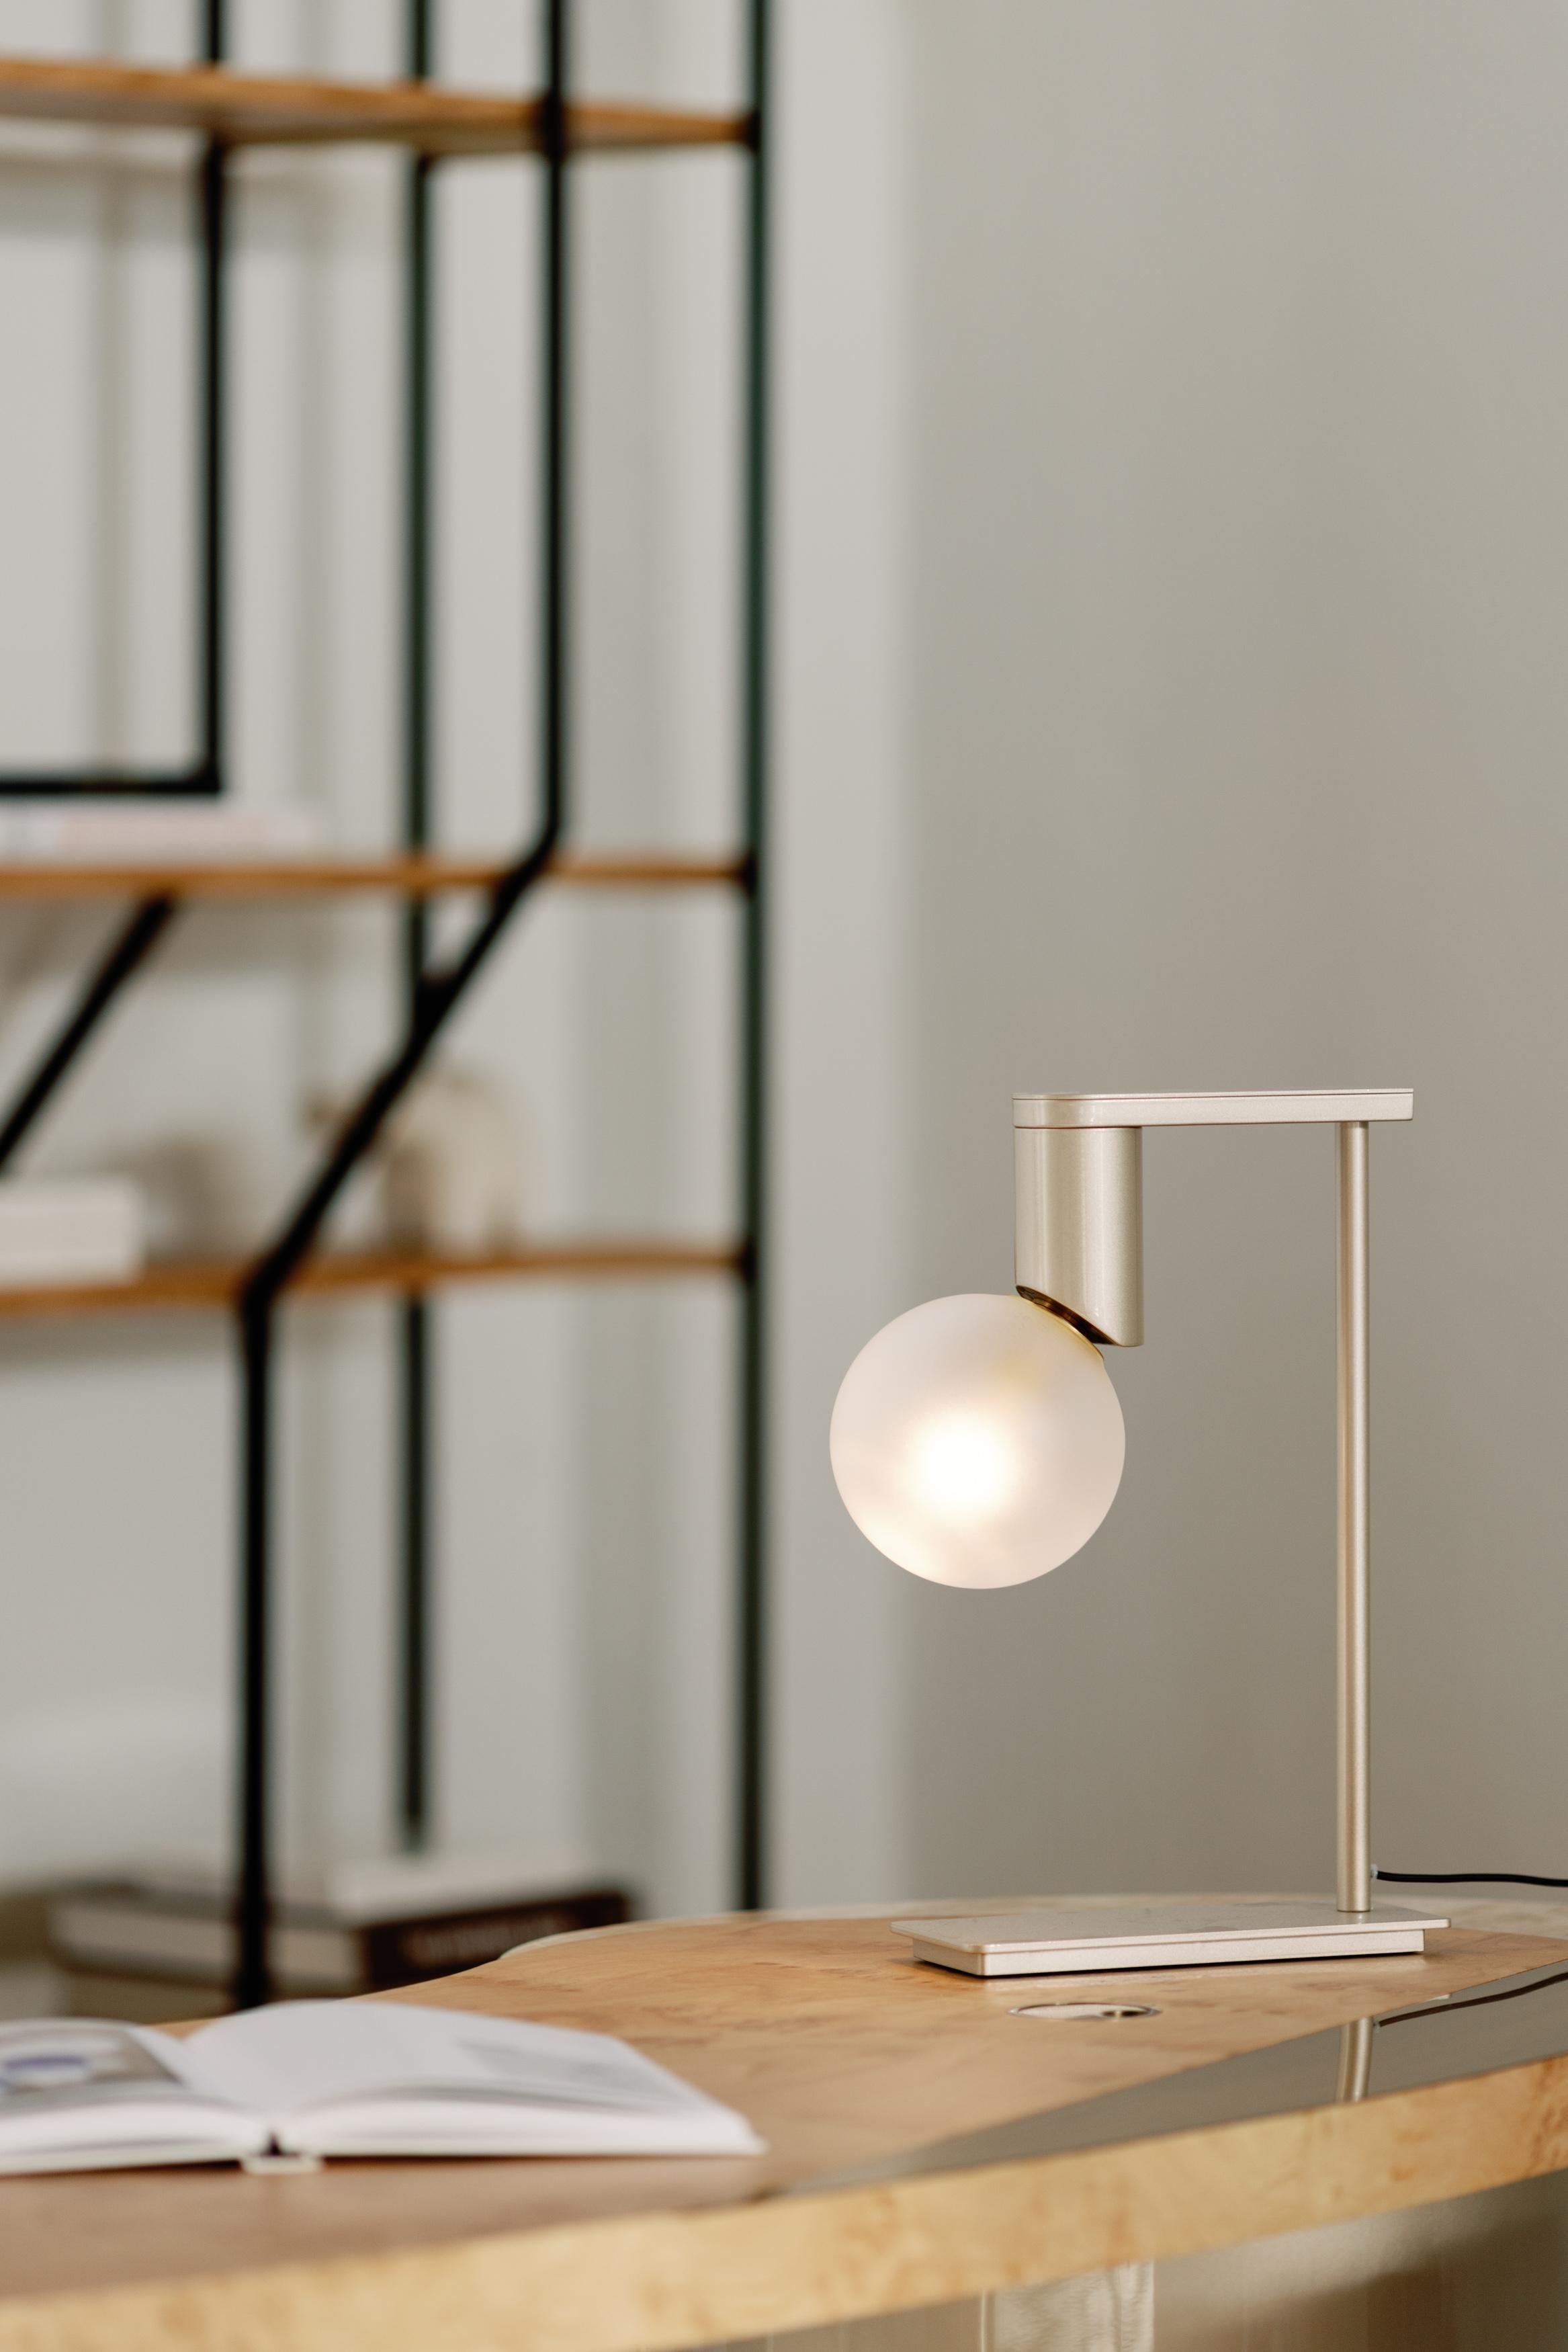 Lampe à poser Bobo, Collection Contemporary, Fabriquée à la main au Portugal - Europe par Greenapple.

La lampe à poser moderne Bobo donne vie à la vision créative grâce à son design unique, améliorant l'atmosphère de la maison moderne.